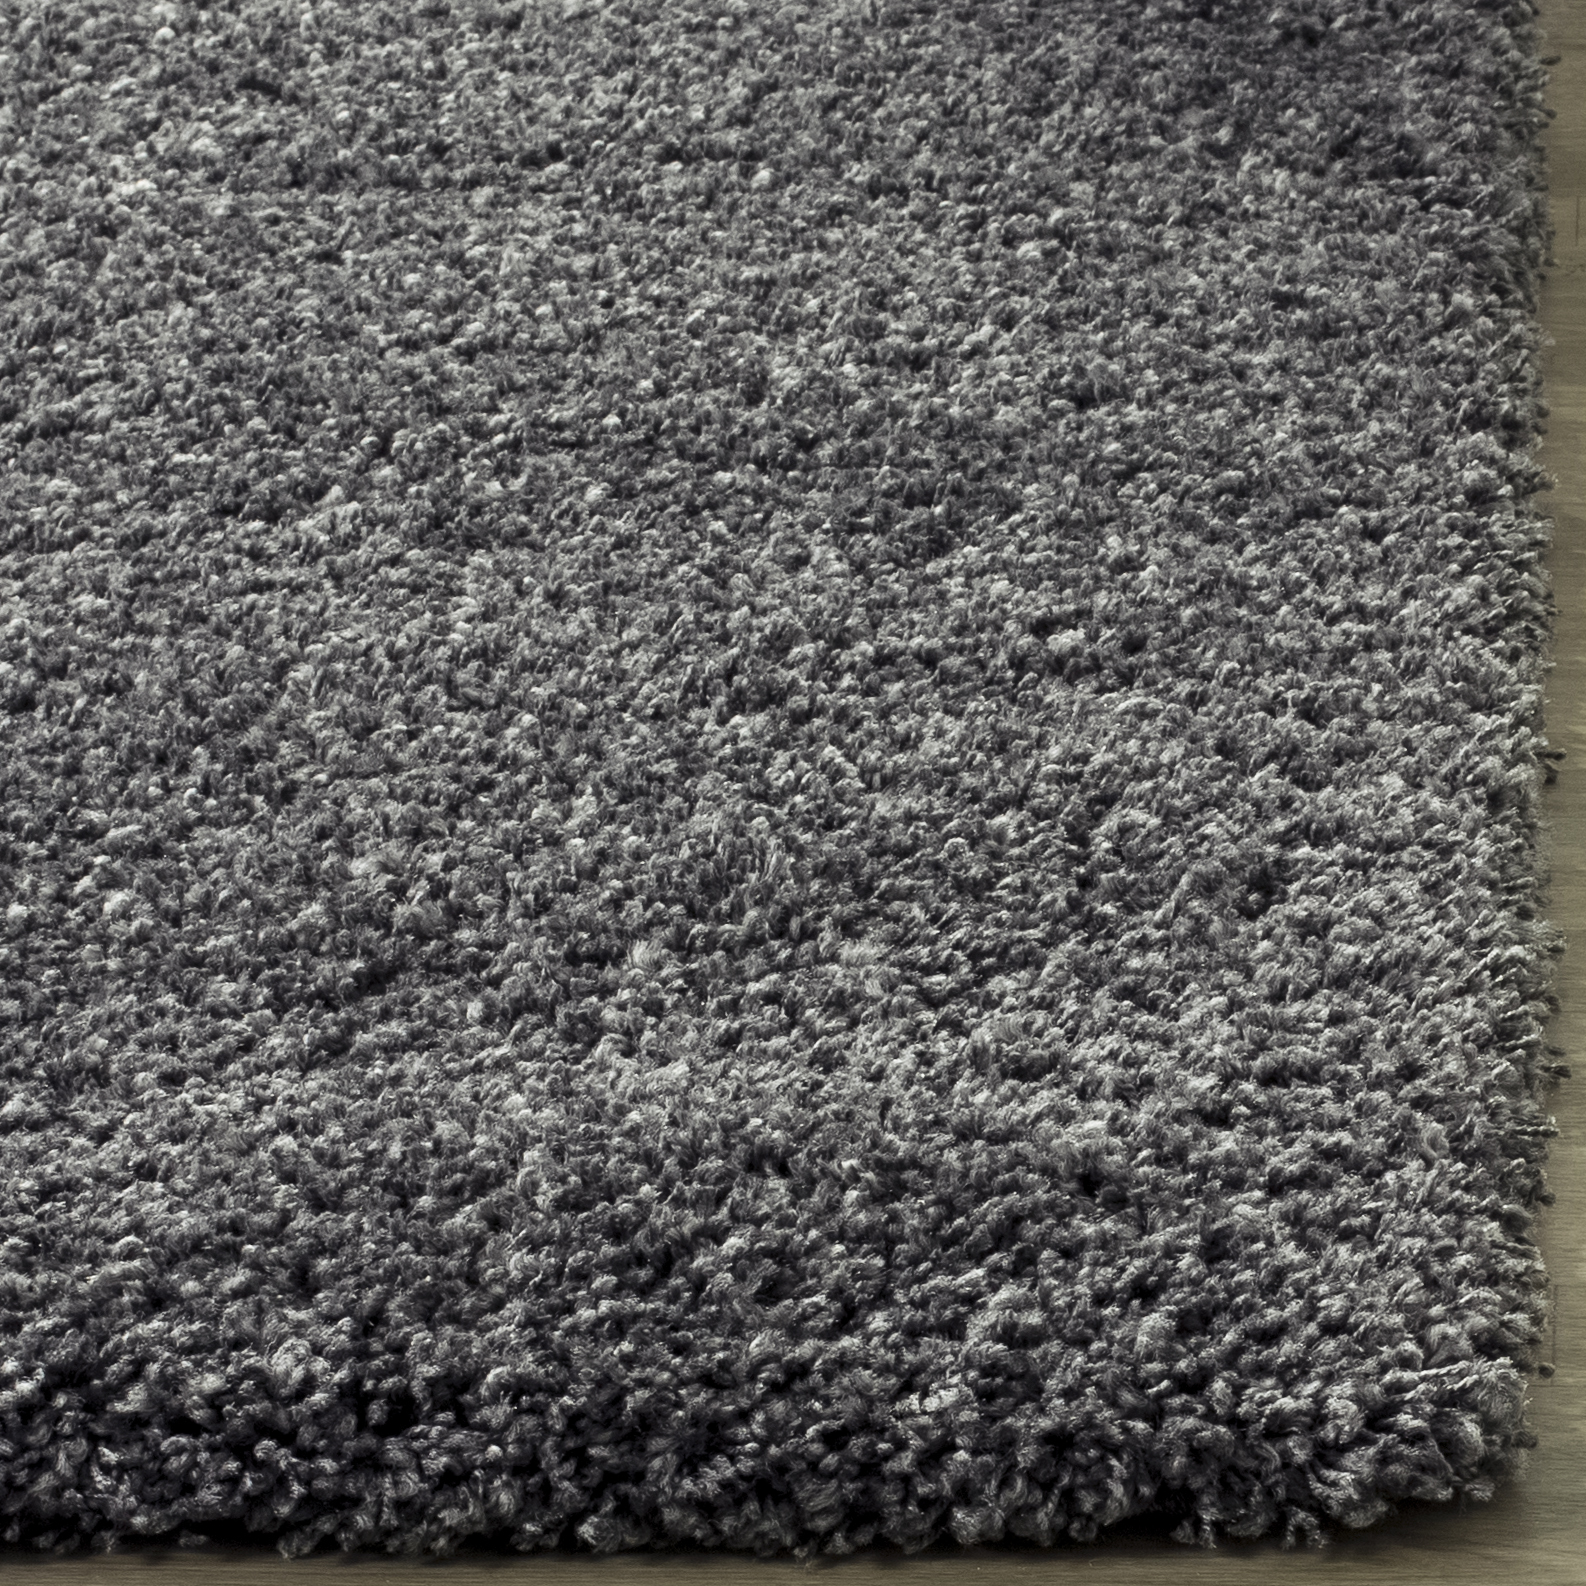 SAFAVIEH California Solid Plush Shag Runner Rug, Dark Grey, 2'3" x 13' - image 4 of 11